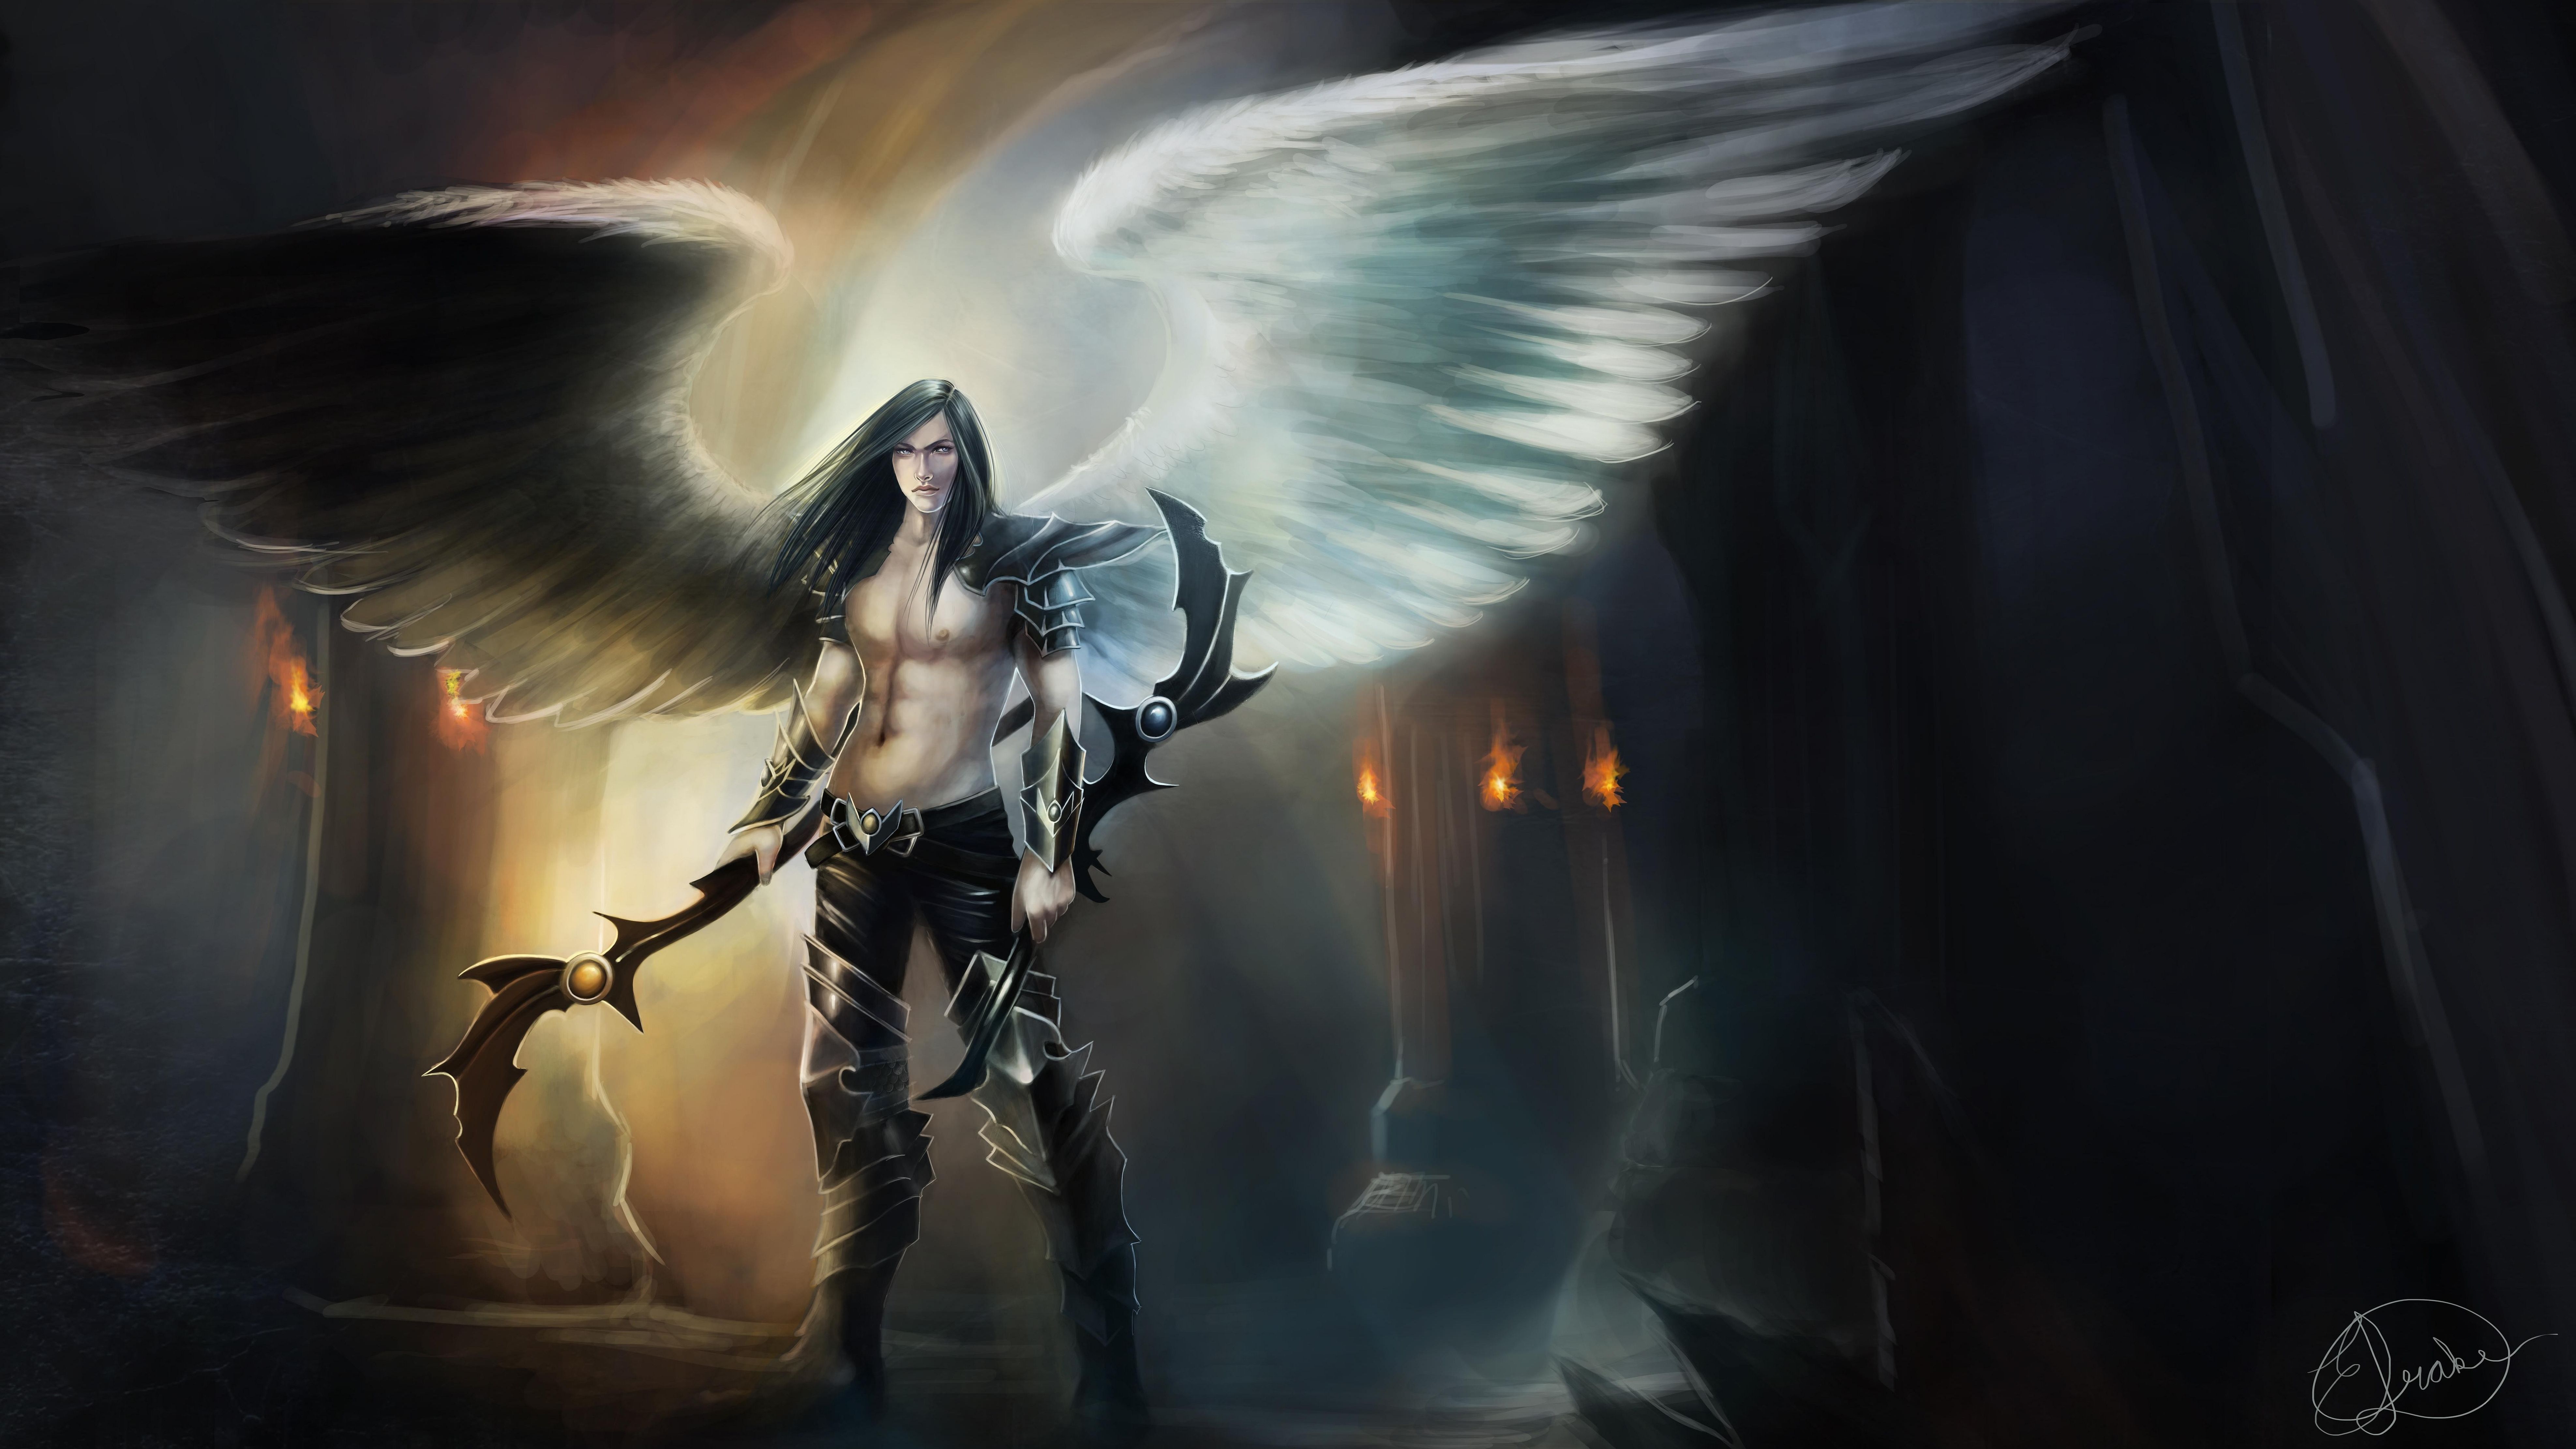 HD wallpaper Fantasy Angel Warrior Wings Woman  Wallpaper Flare